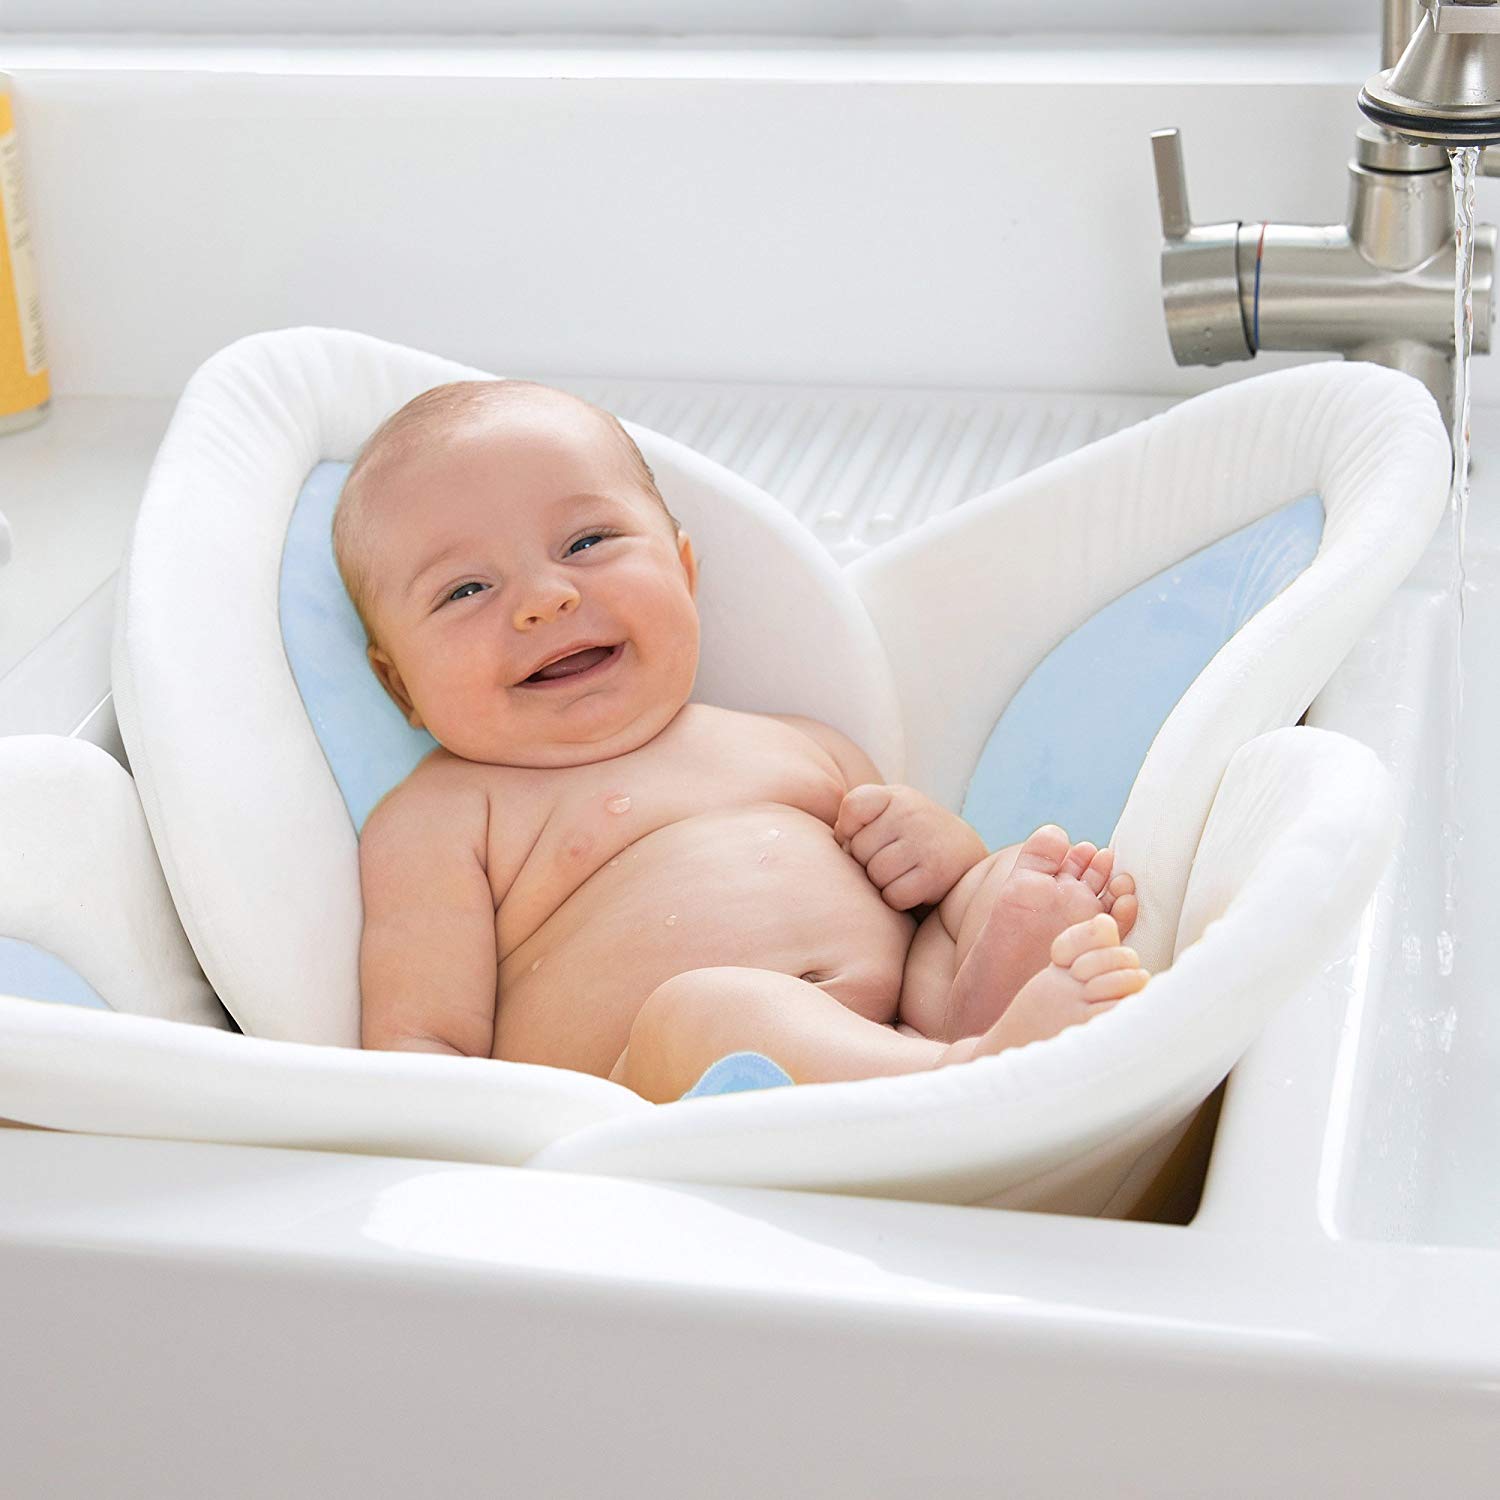 Jak kąpać noworodka po raz pierwszy i nie dostać zawału, czyli o kąpielowych traumach debiutujących rodziców